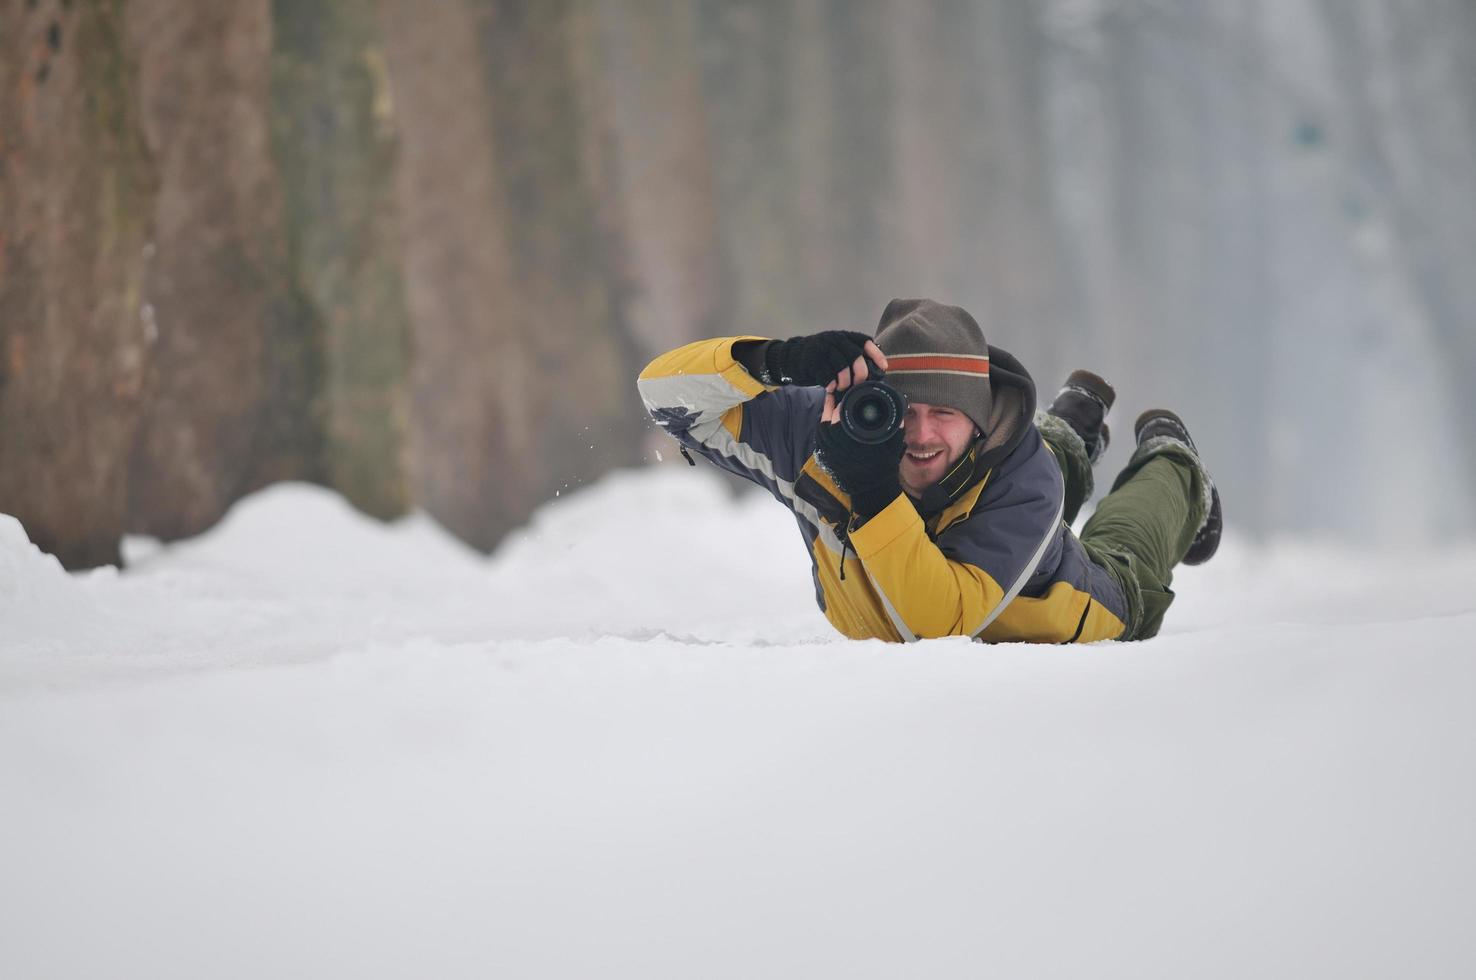 Photographer in snow photo